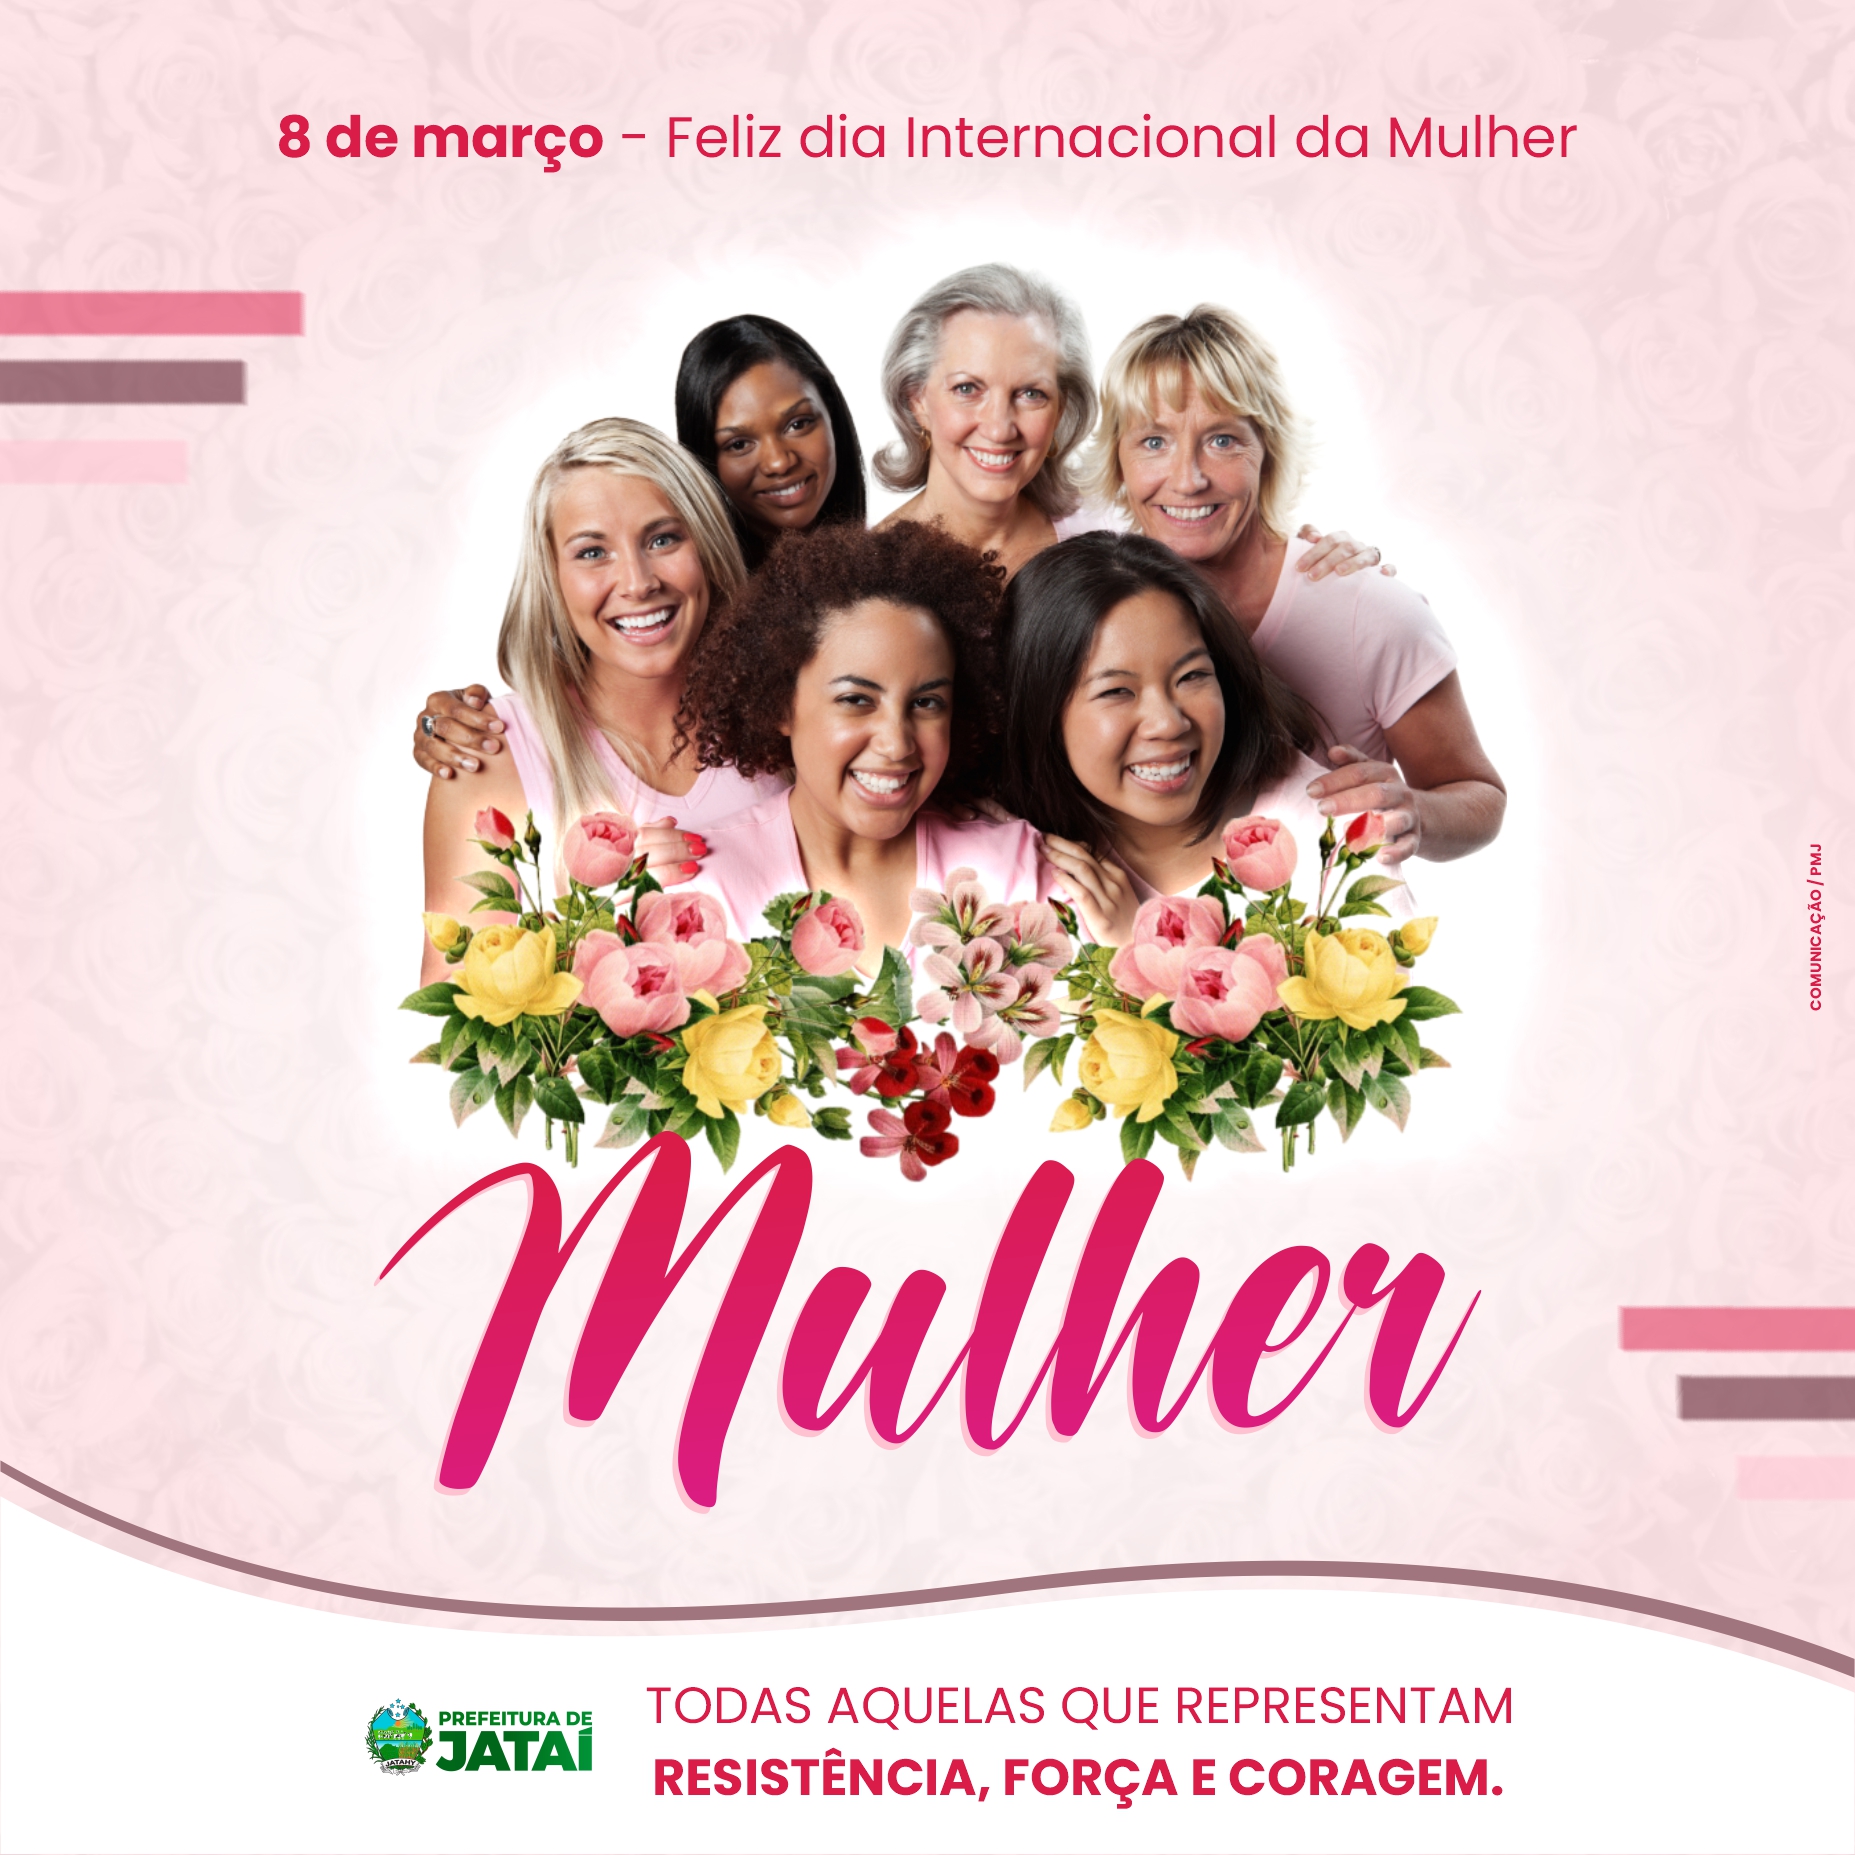 8 de Março • Dia Internacional da Mulher – Prefeitura Municipal de Serrinha